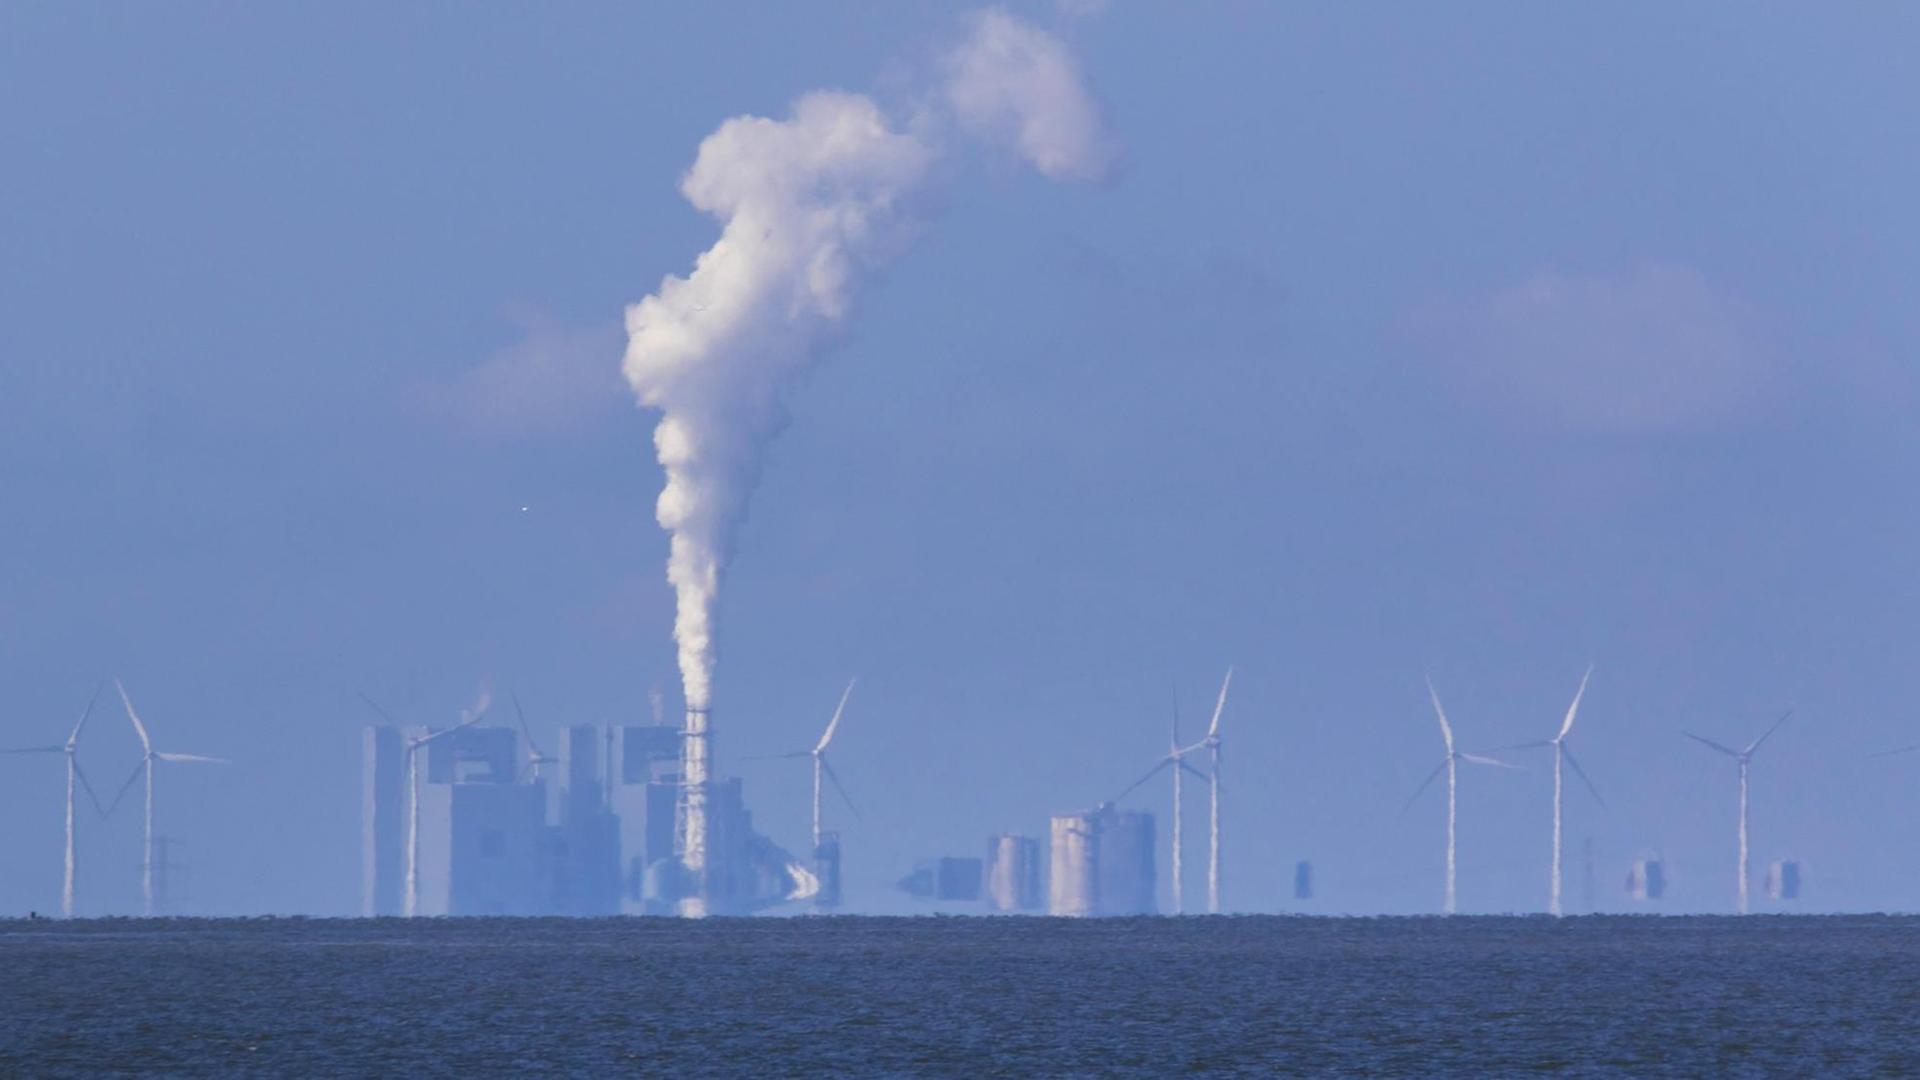 Blick aufs Meer, an dessen Horizont sich ein industrieller Komplex aus Wind- und Kohlekraft zeigt. Weißer Rauch steigt auf.